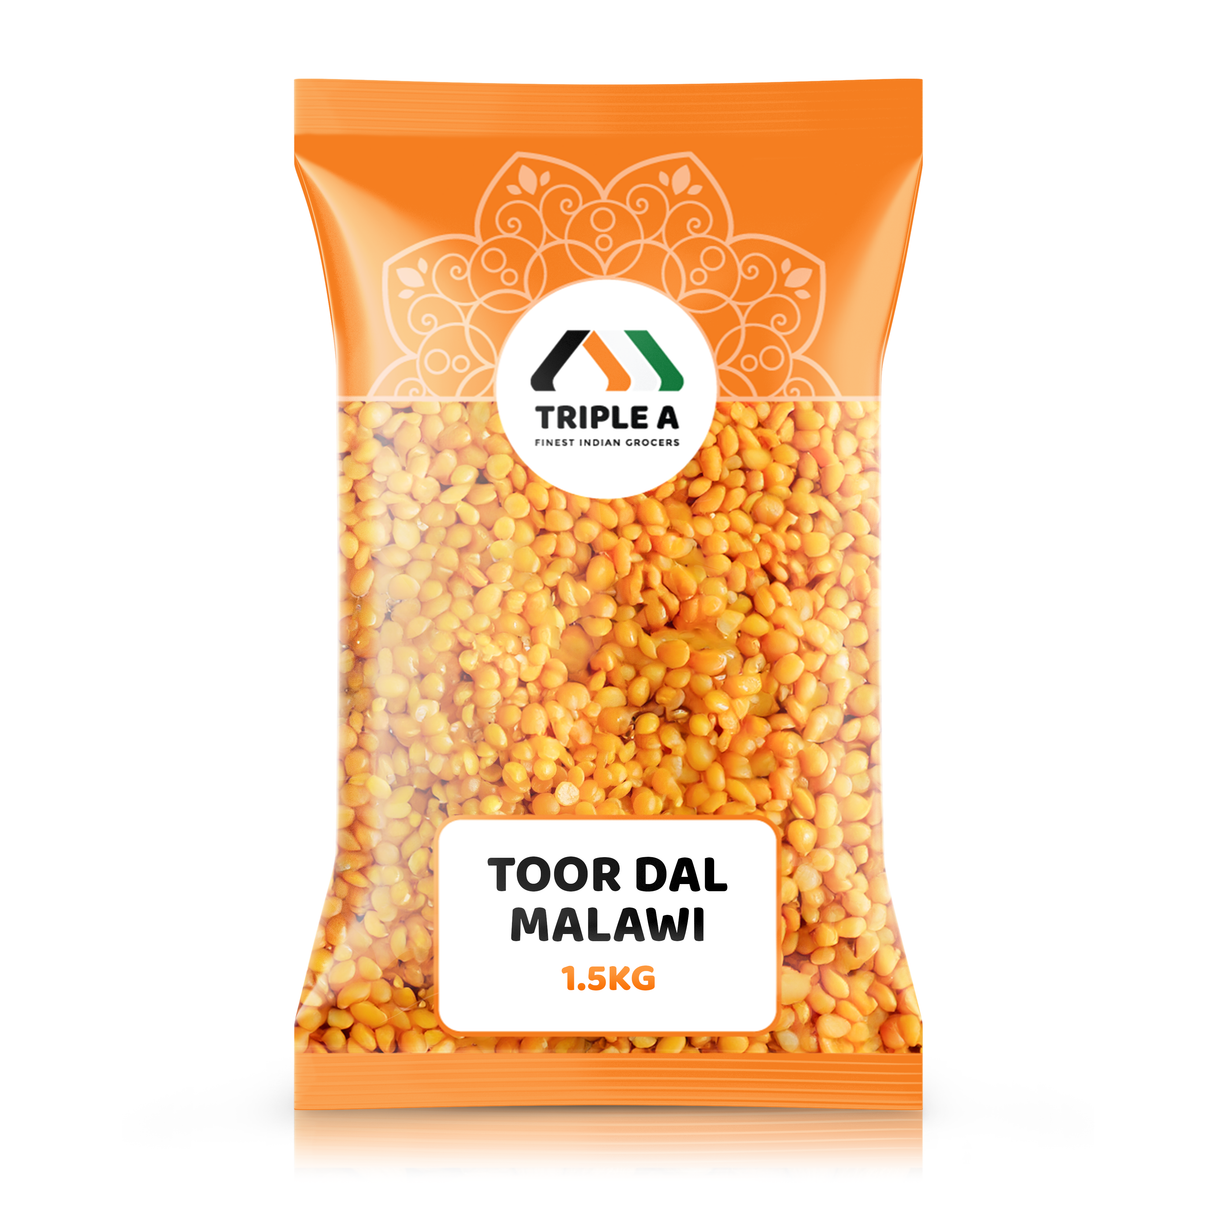 Triple A Toor Daal Malawi 1.5Kg